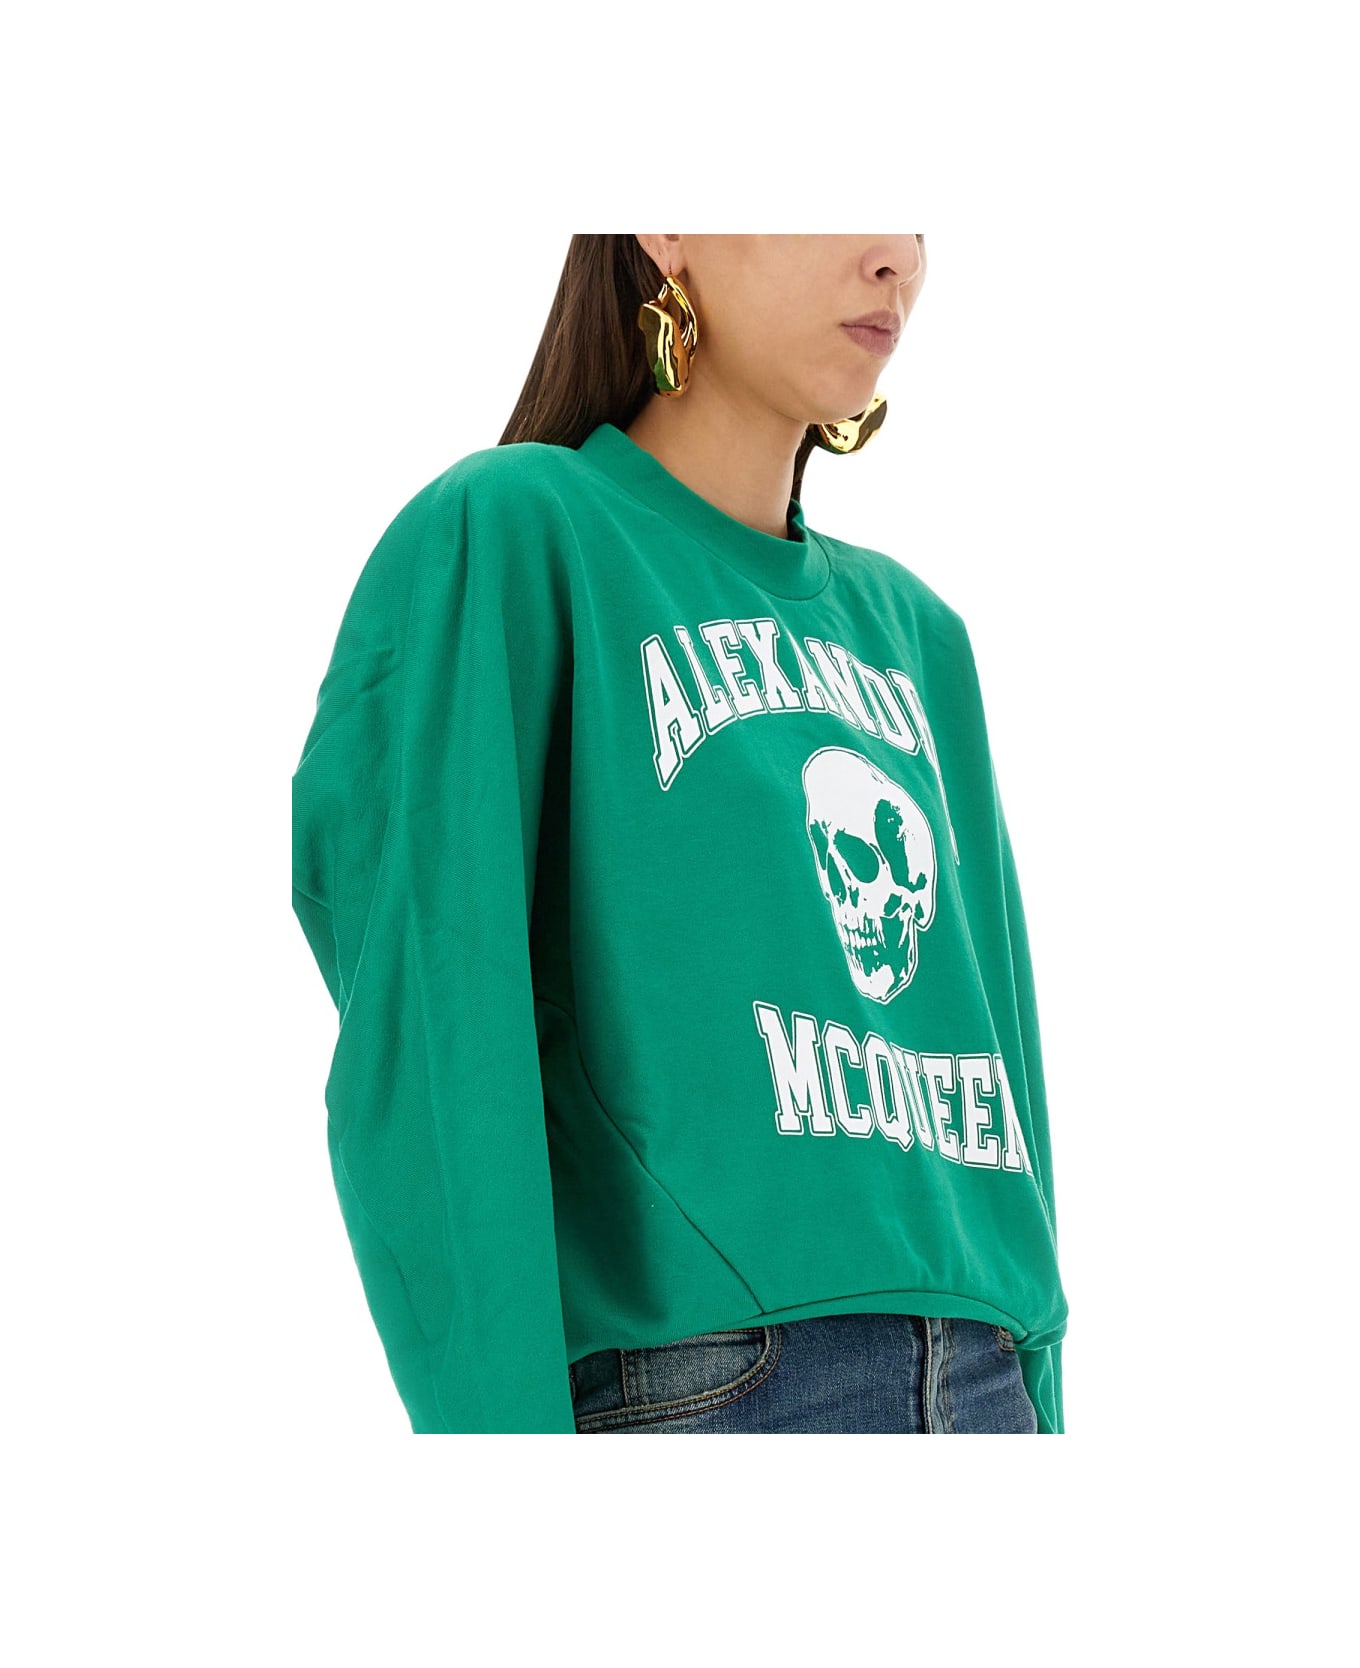 Alexander McQueen Varsiity Skull Sweatshirt - GREEN